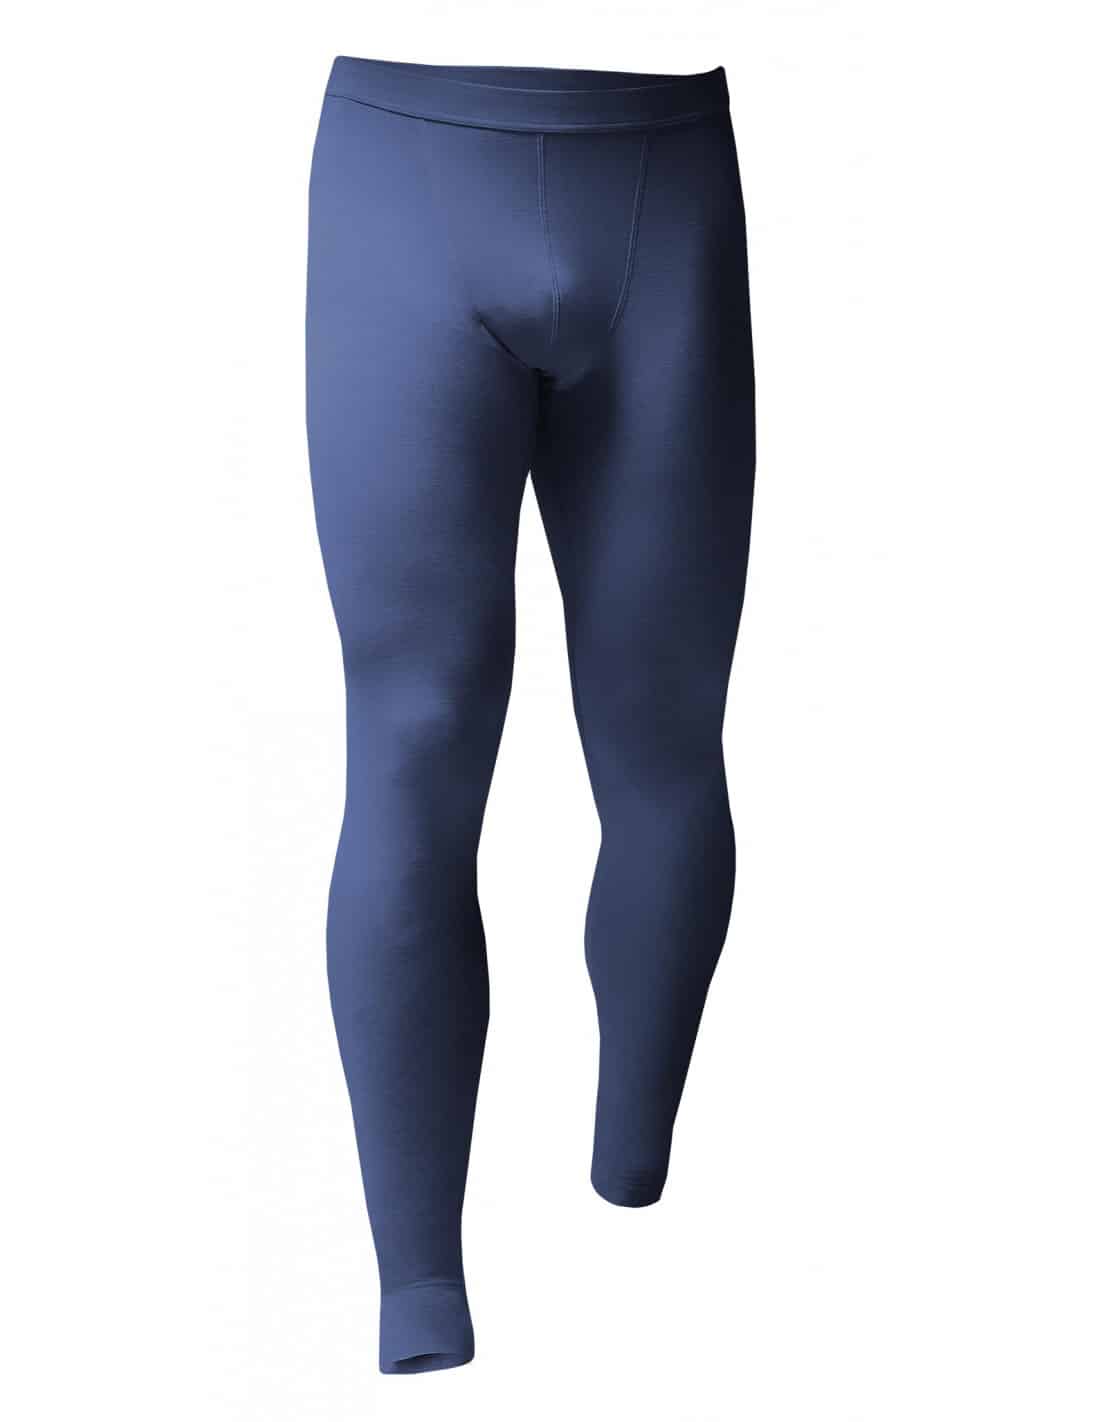 https://www.grand-froid.fr/6211-thickbox_default/ultra-light-thermal-leggings-for-men.jpg